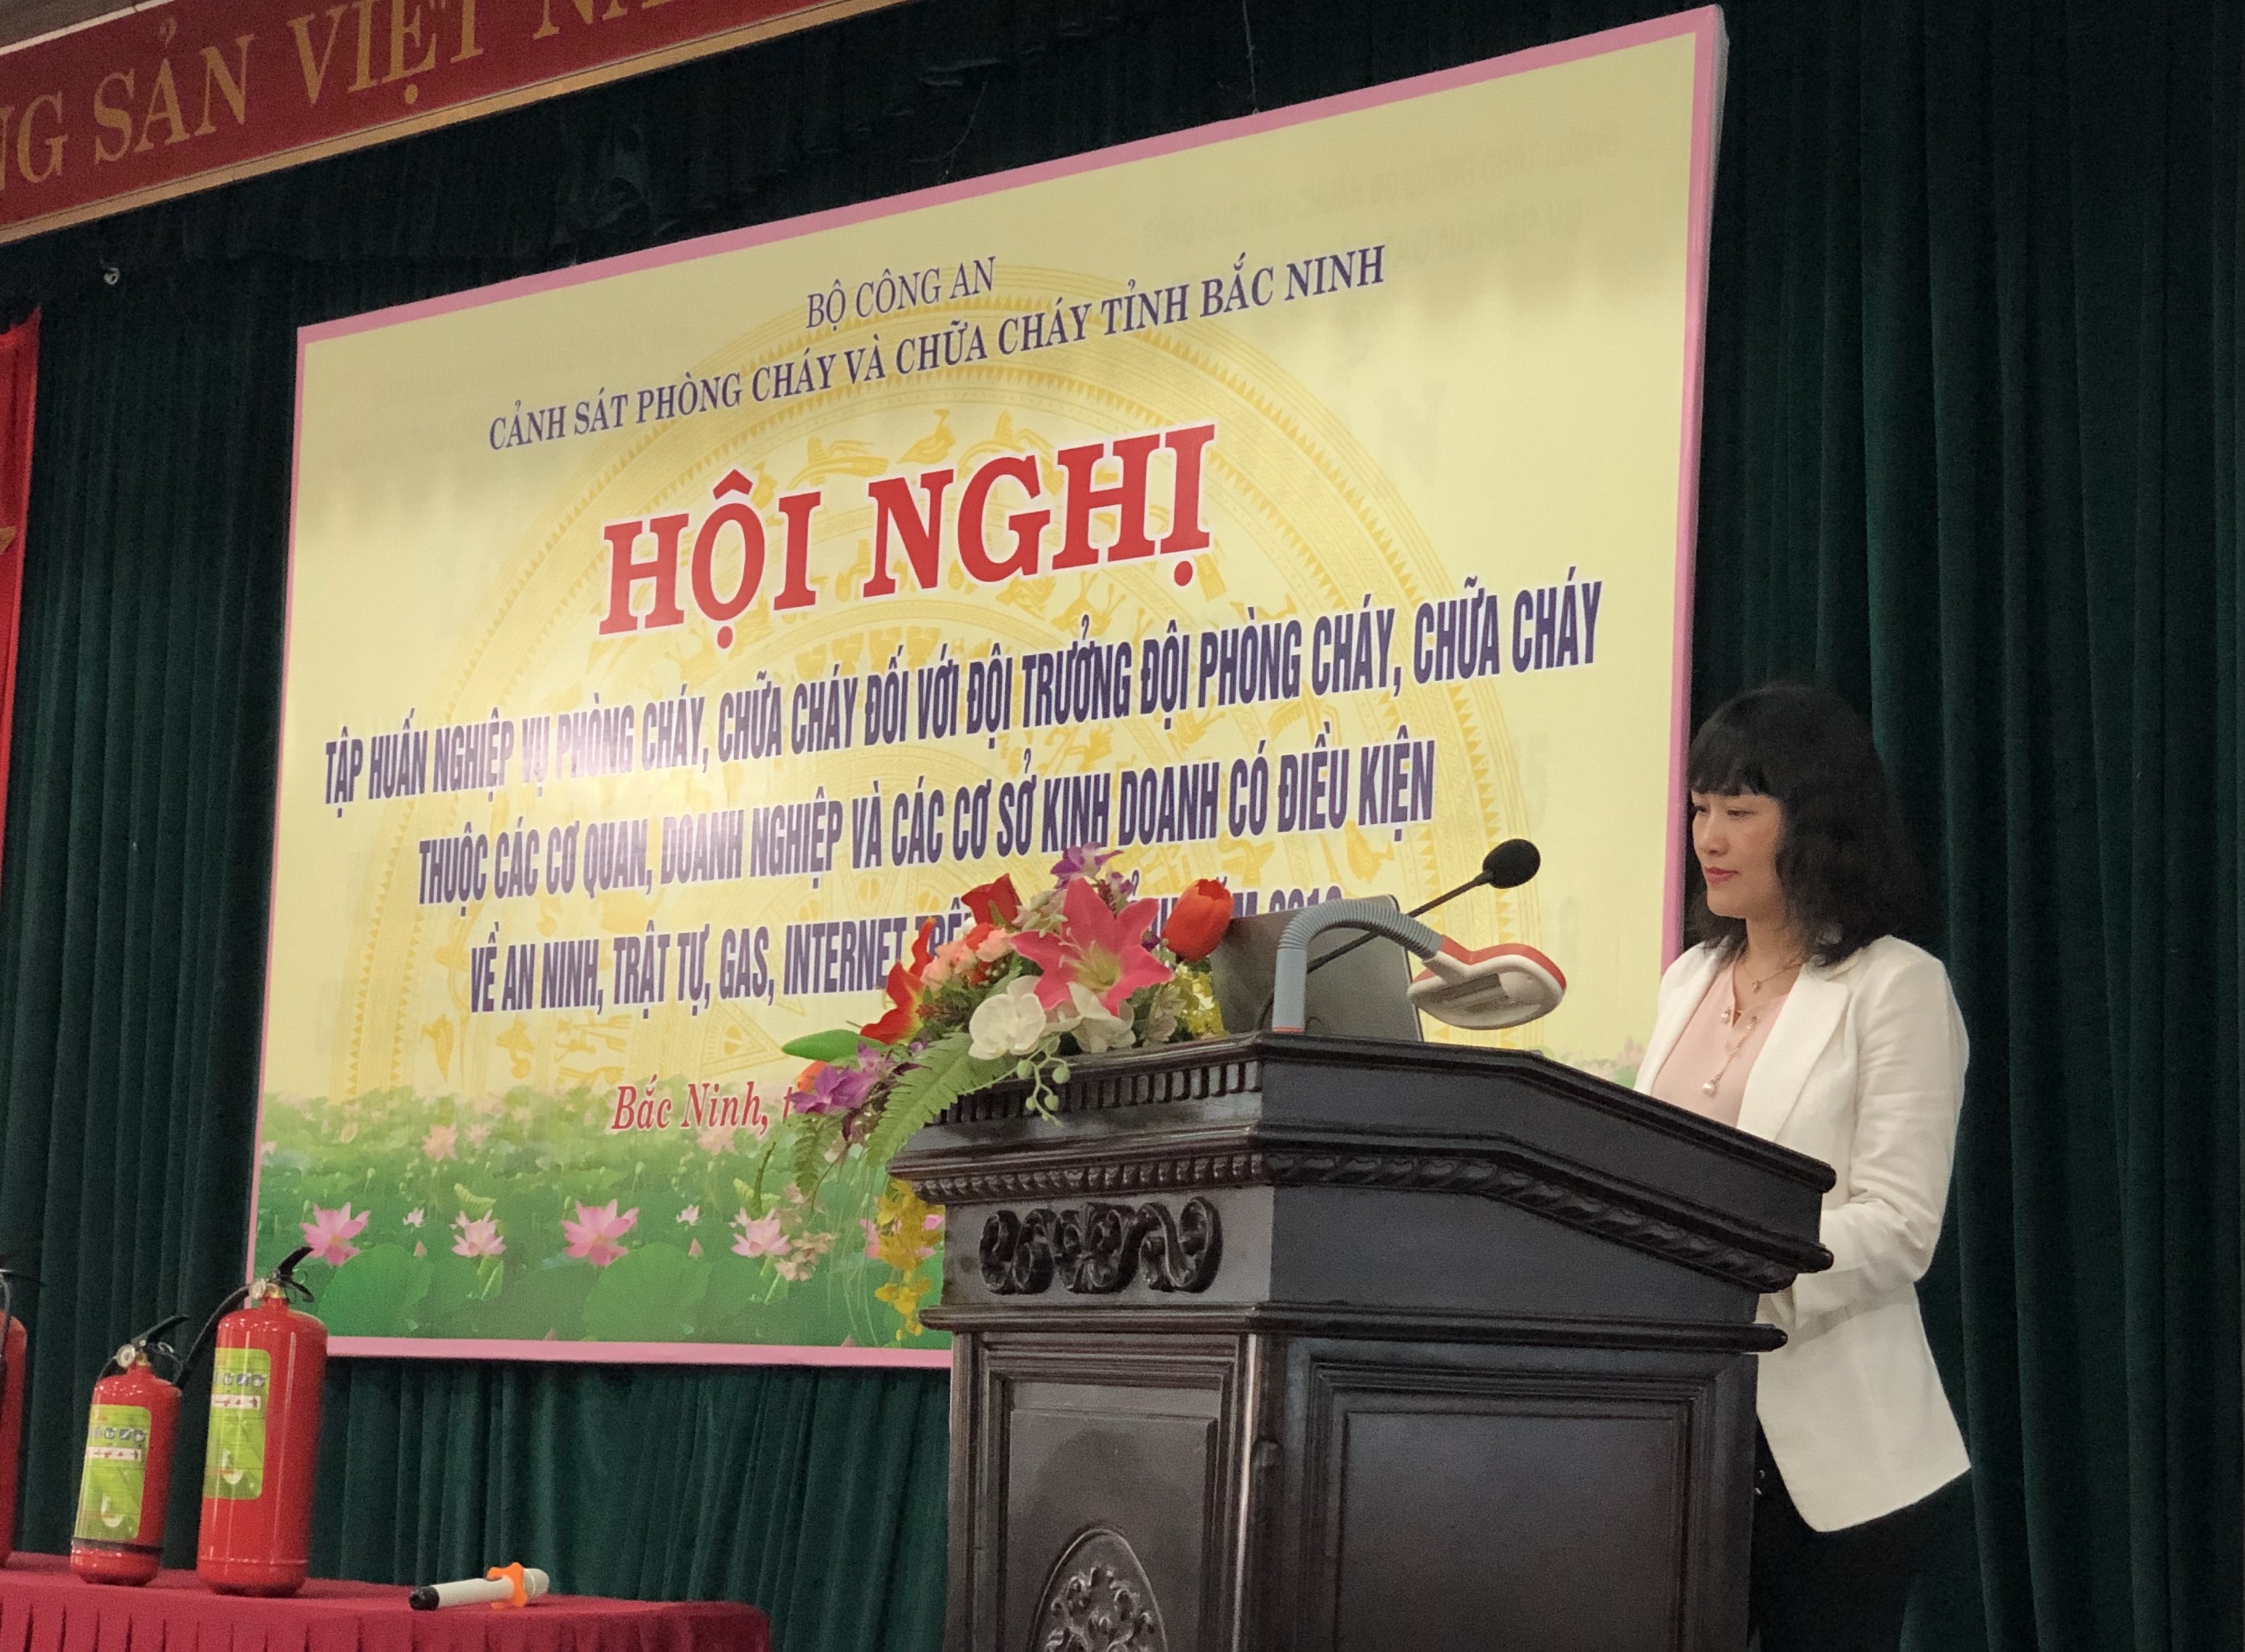 Giới thiệu bình chữa cháy gốc nước tại Hội nghị Tập huấn công tác PCCC&CNCH tỉnh Bắc Ninh